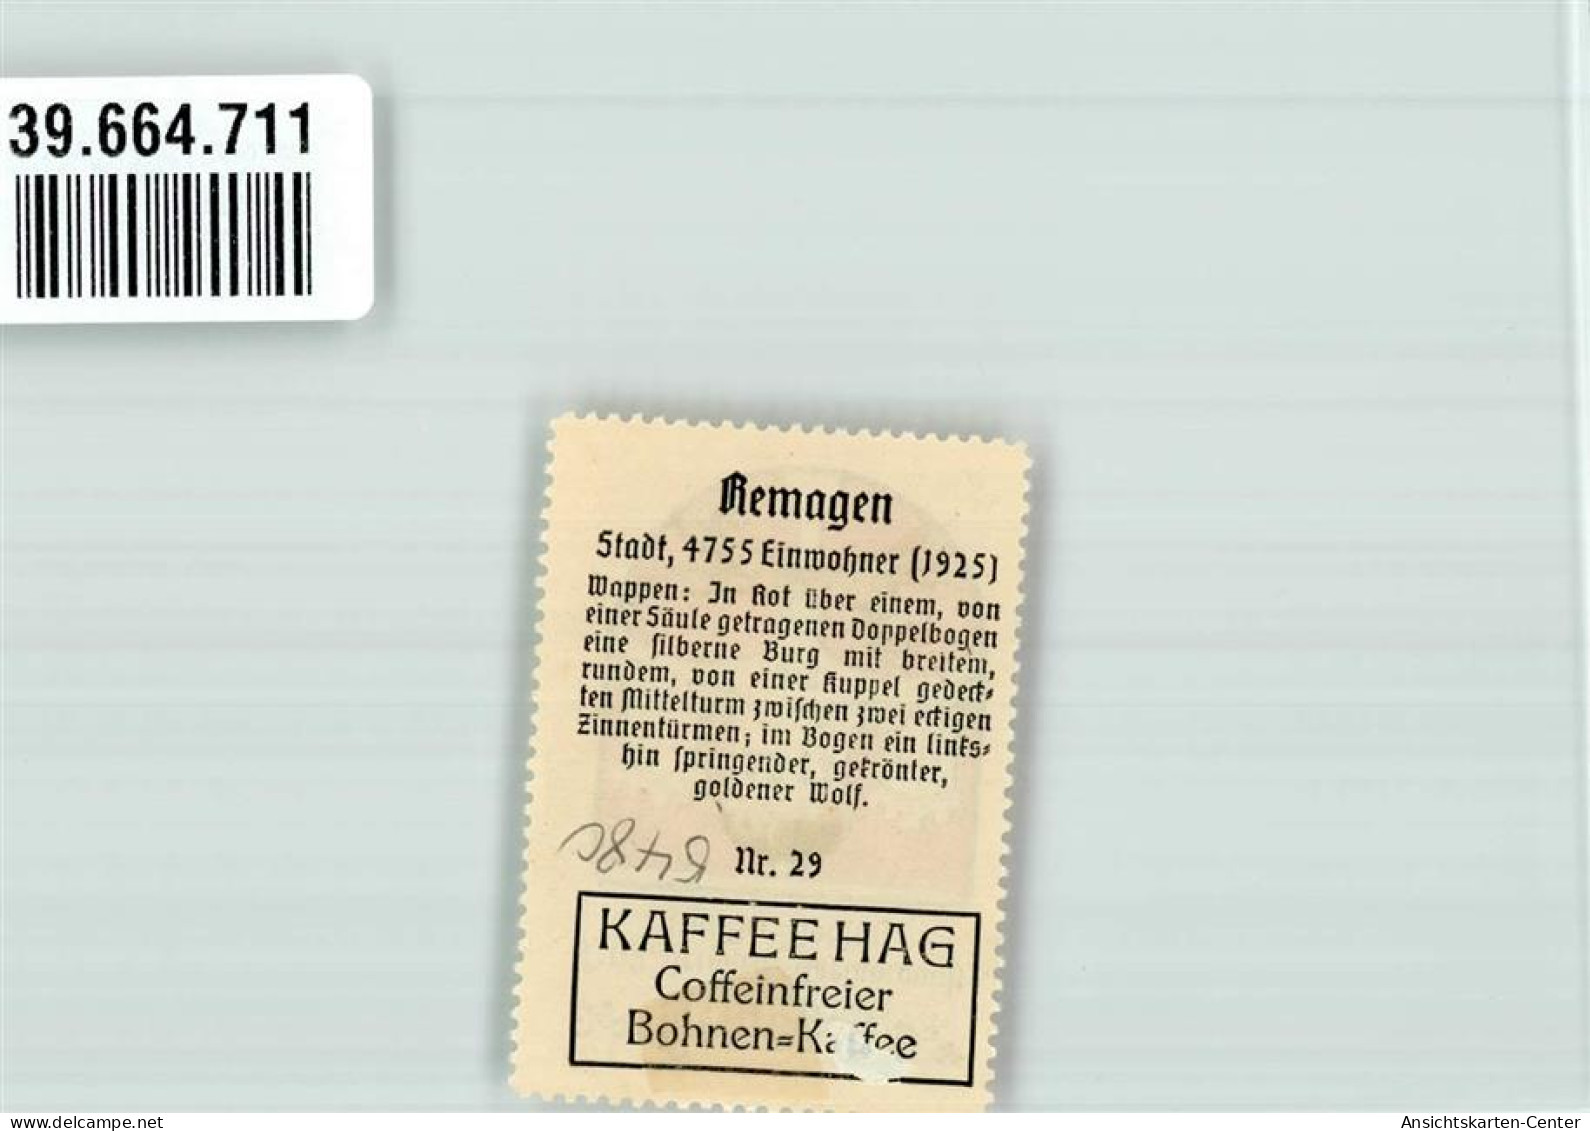 39664711 - Remagen - Remagen